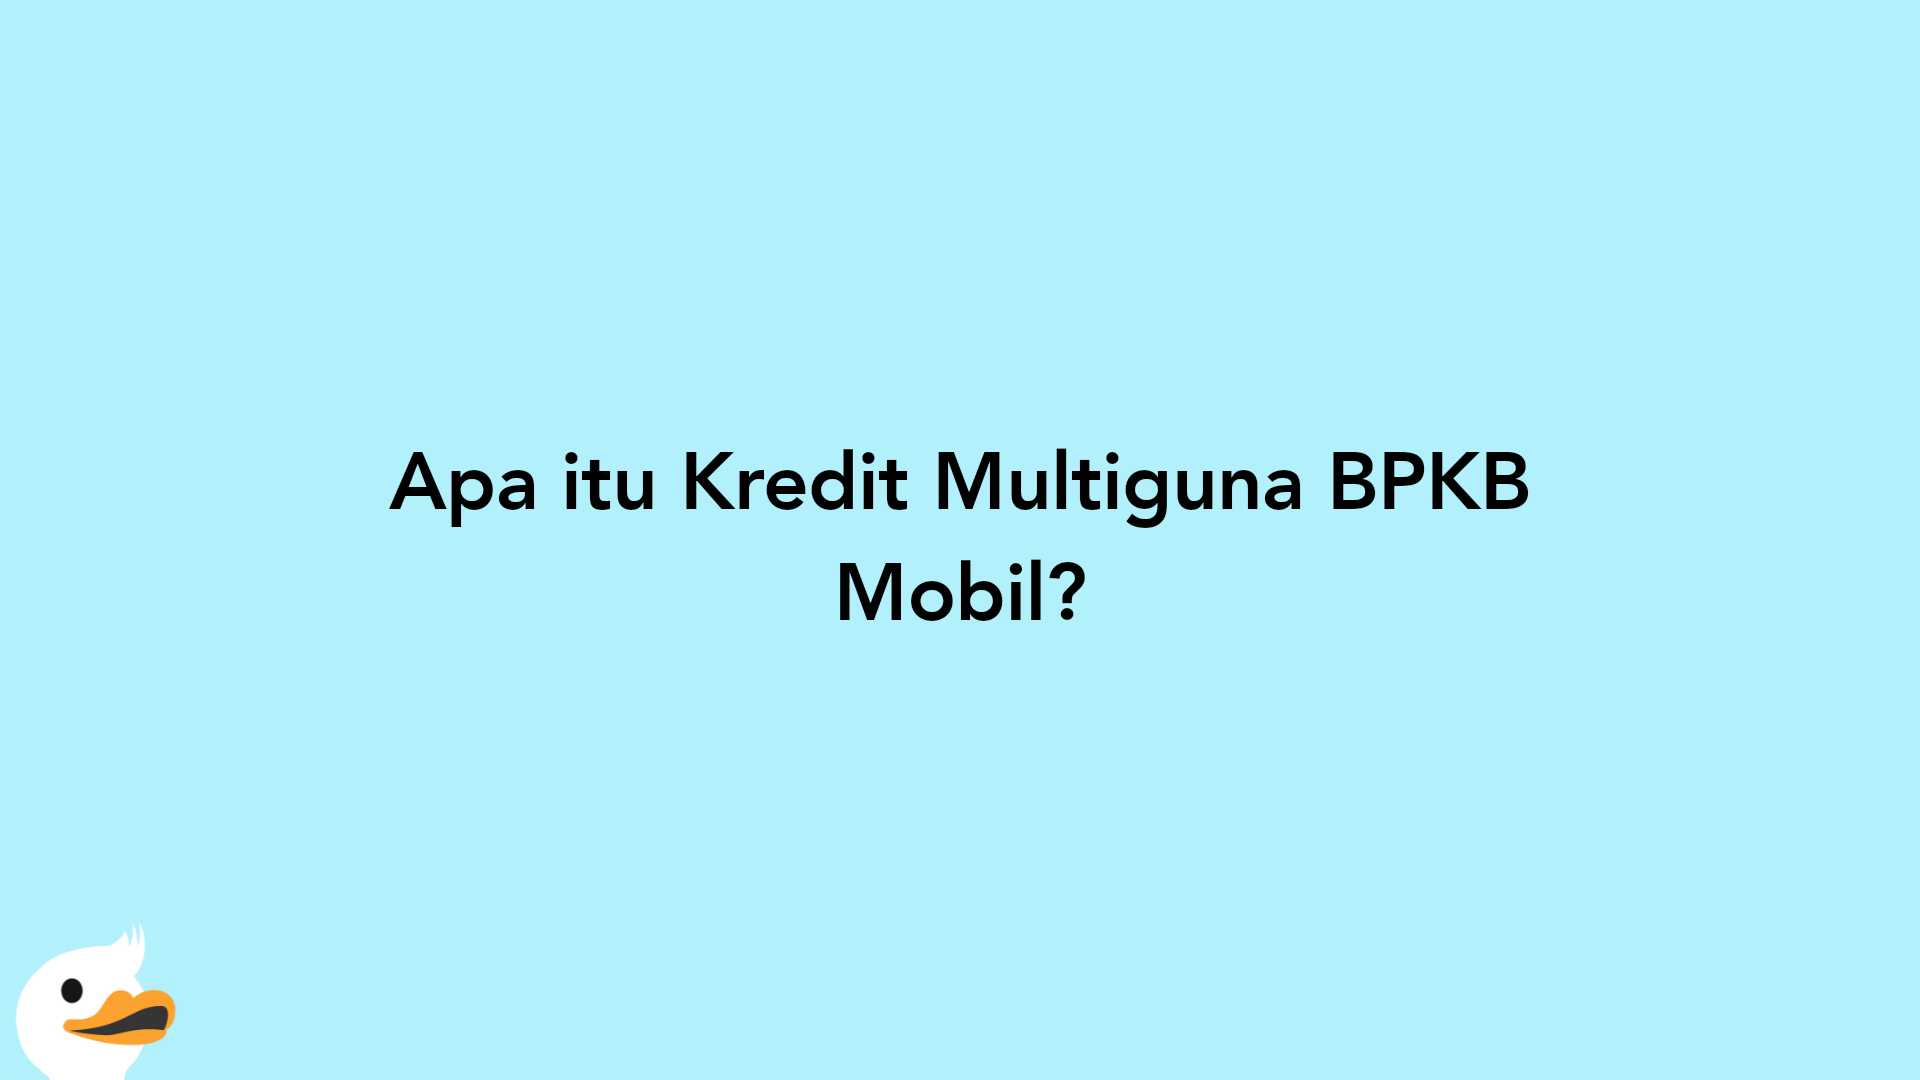 Apa itu Kredit Multiguna BPKB Mobil?